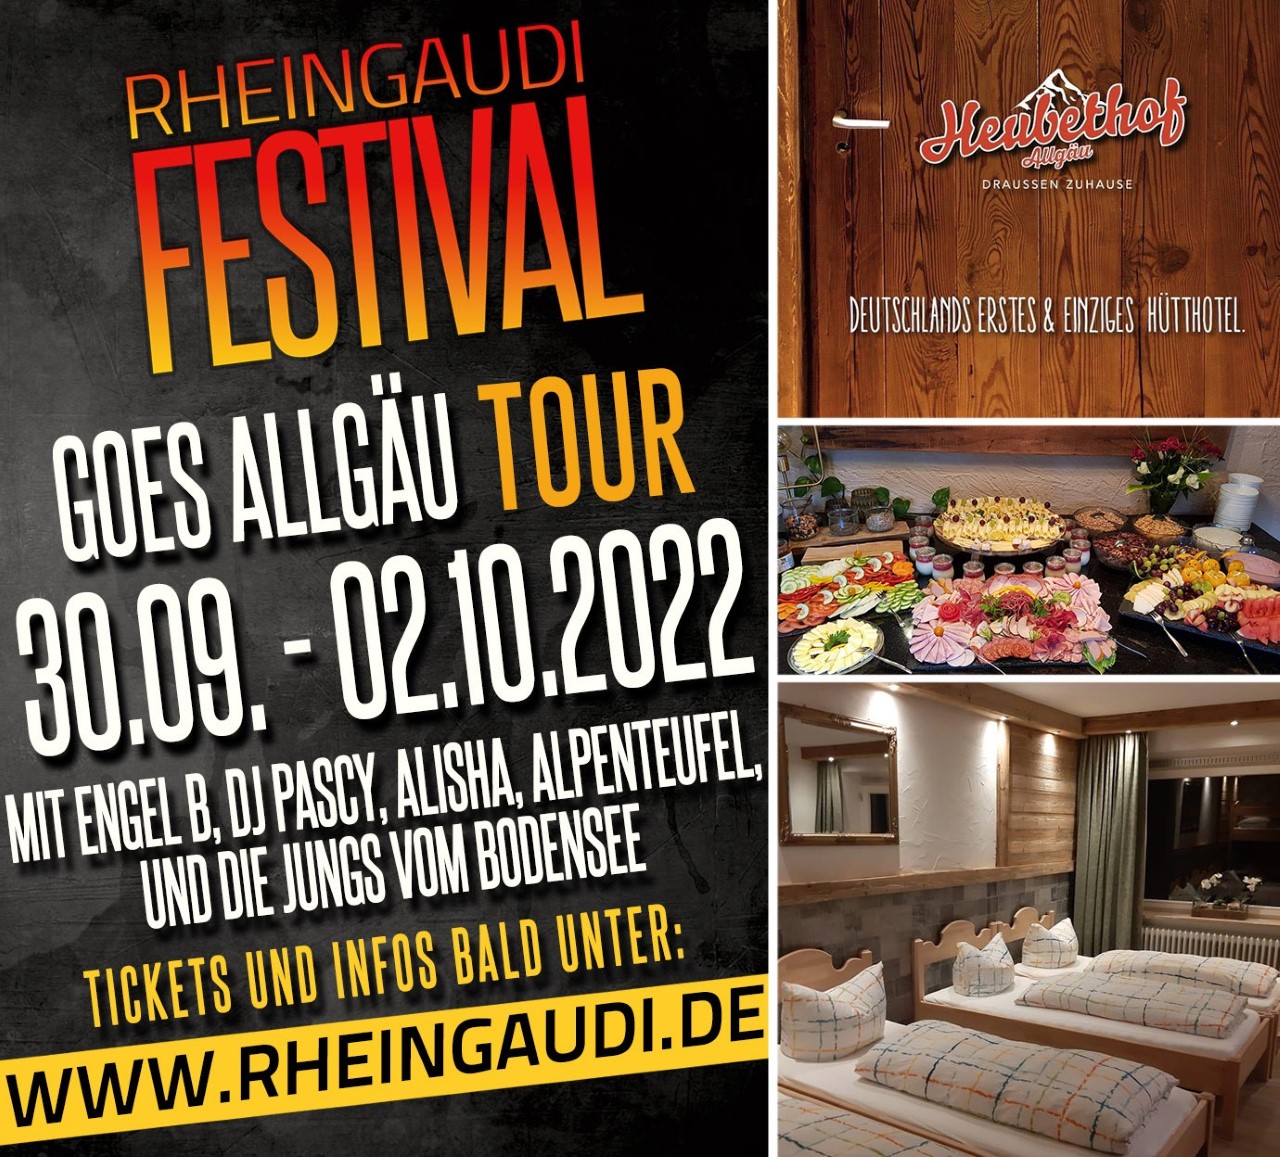 Rheingaudi Festival Goes Allgäu vom 30.09.-02.10.22